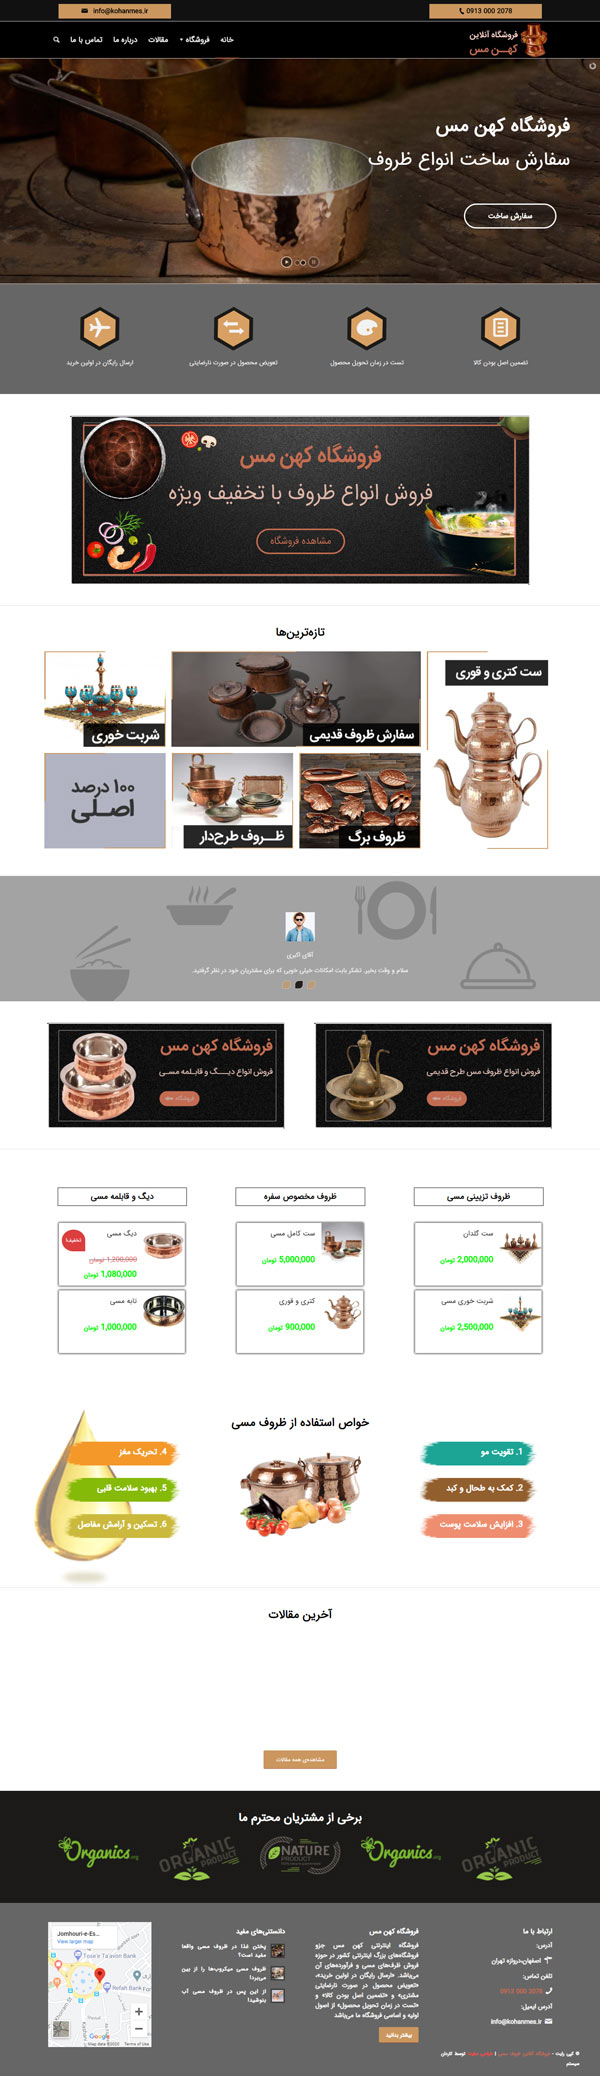 طراحی سایت کهن مس | فروشگاه آنلاین ظروف مسی